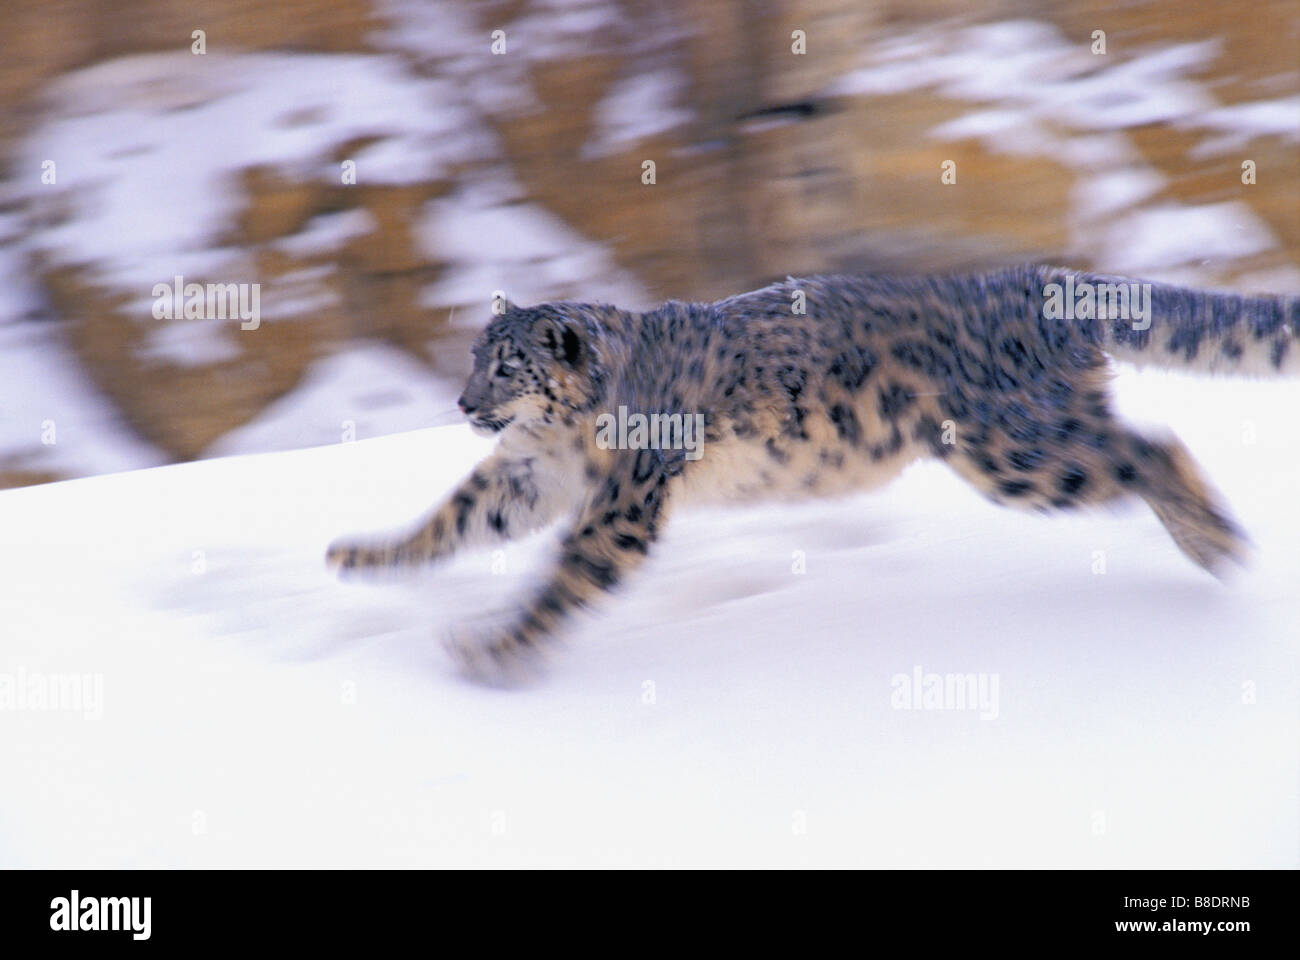 tk0510, Thomas Kitchin; Leopard Snow Stock Photo